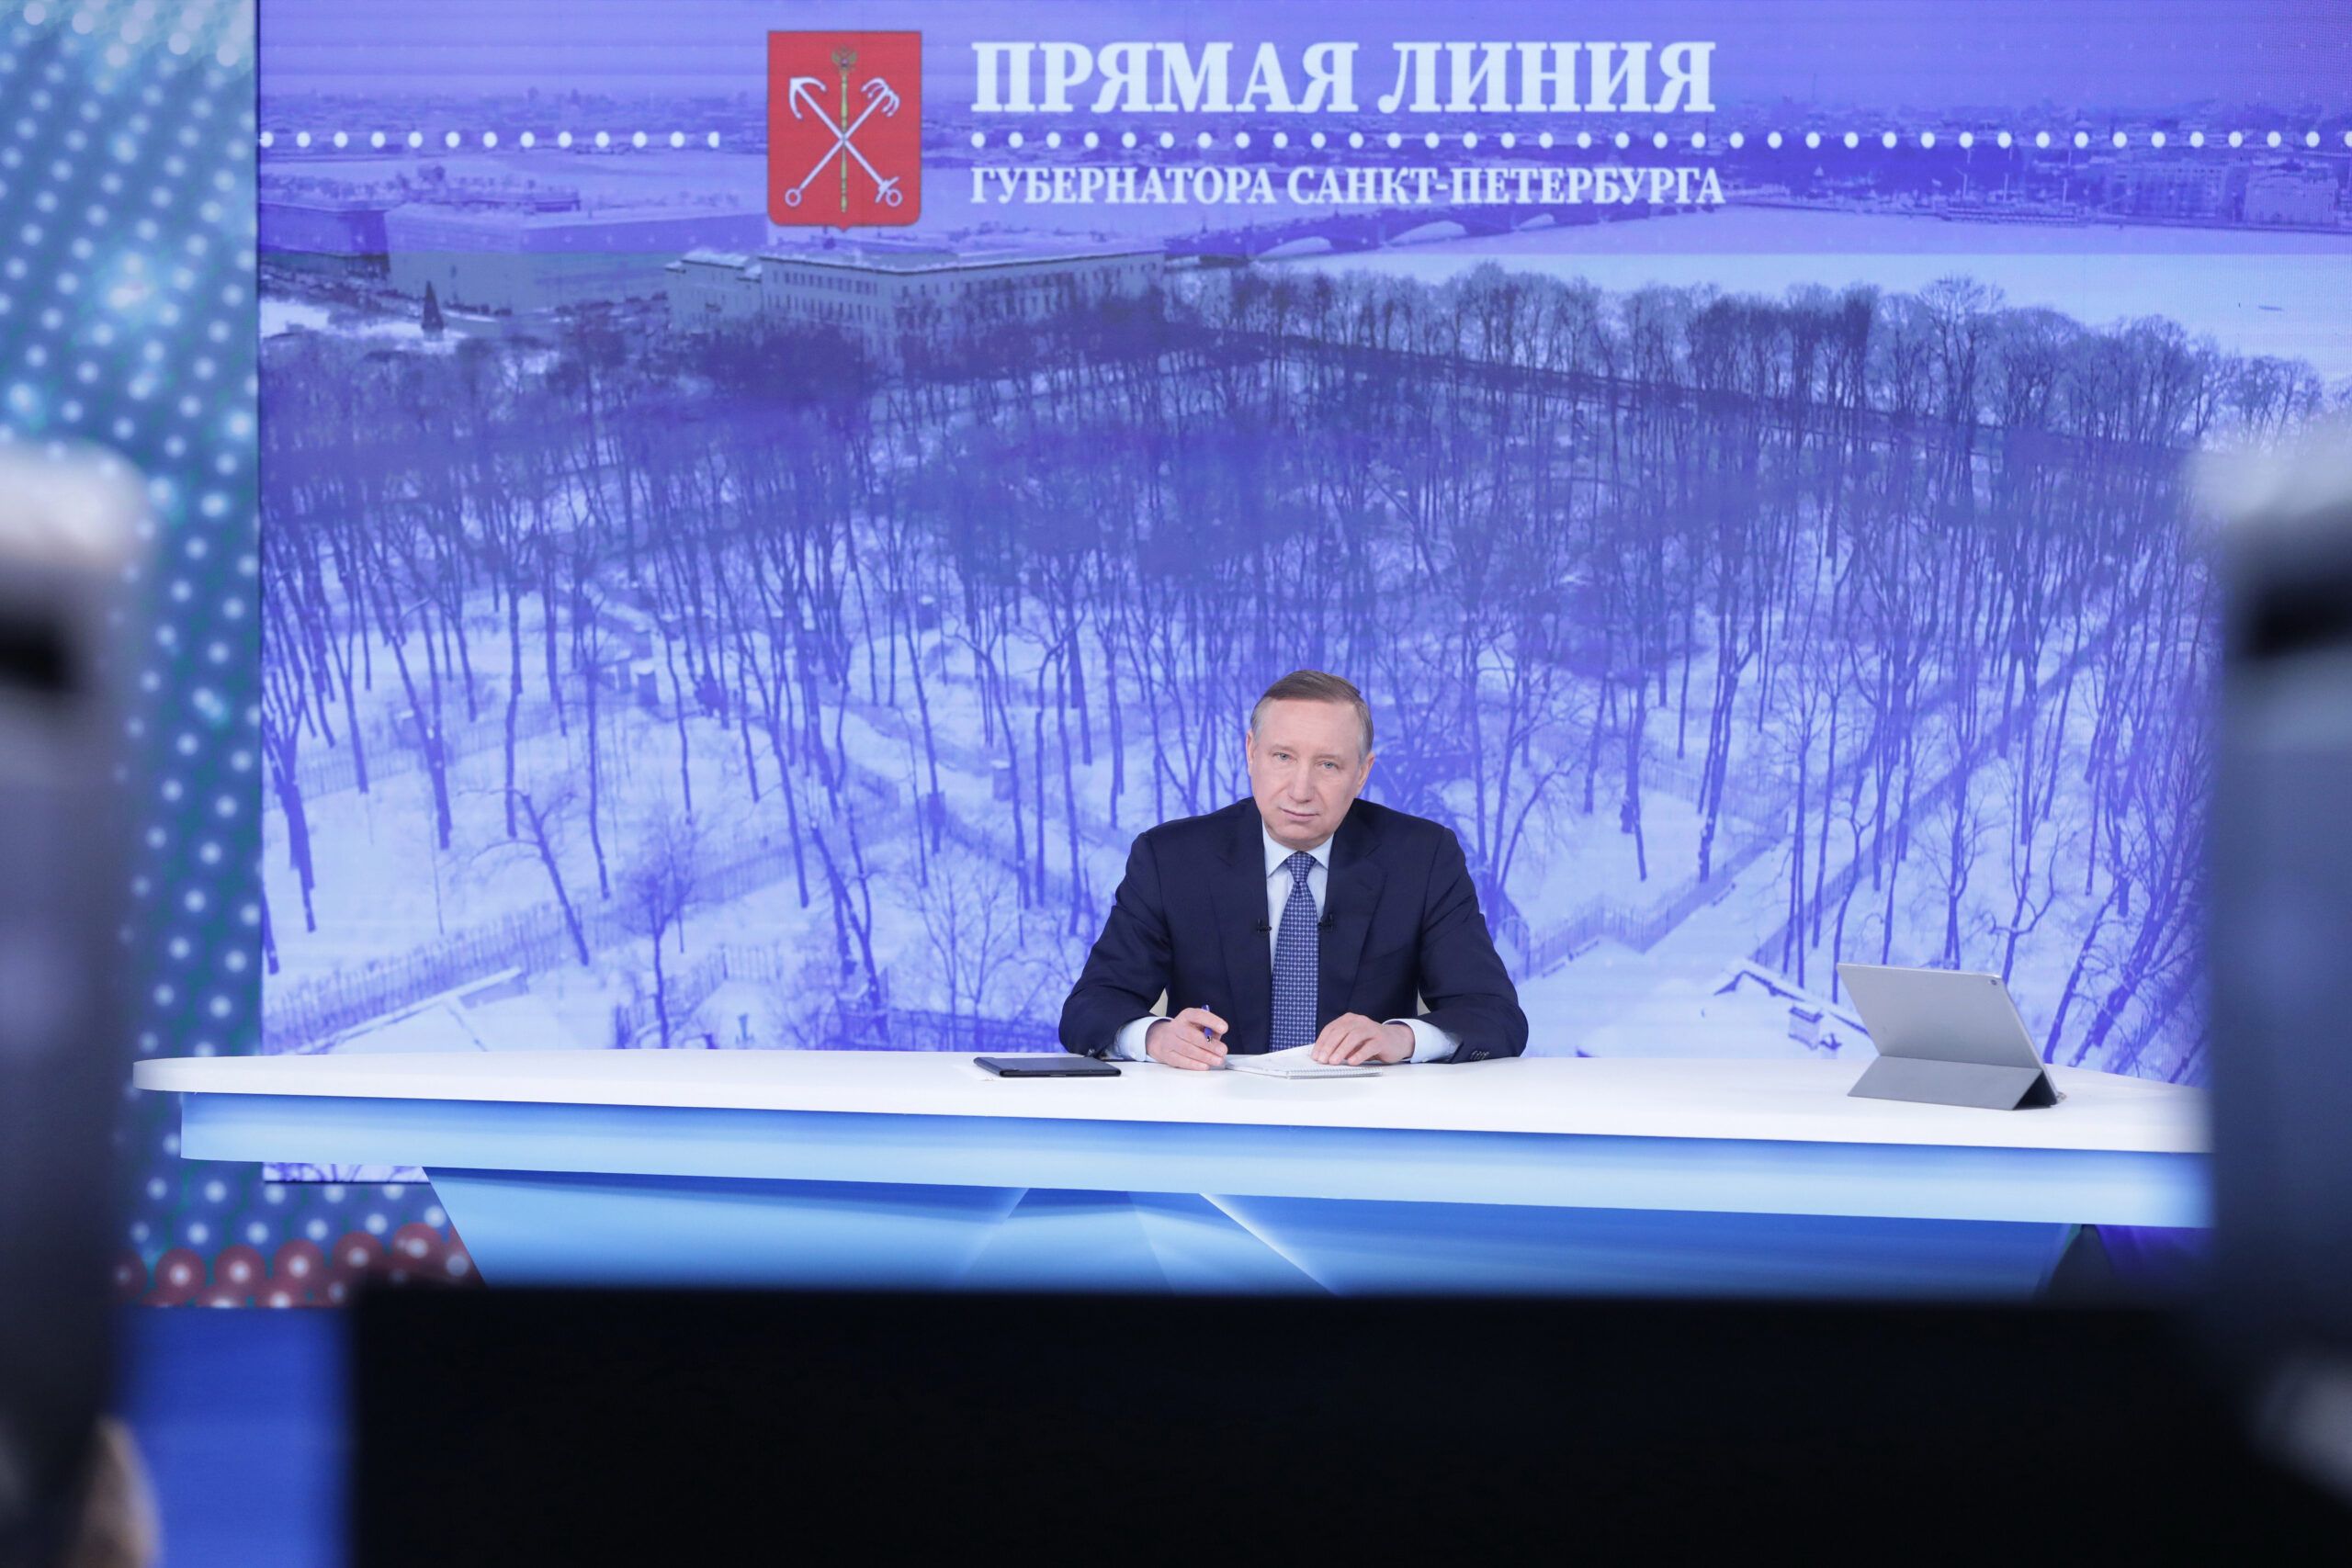 С приходом губернатора Беглова в Петербурге сложилась критическая ситуация